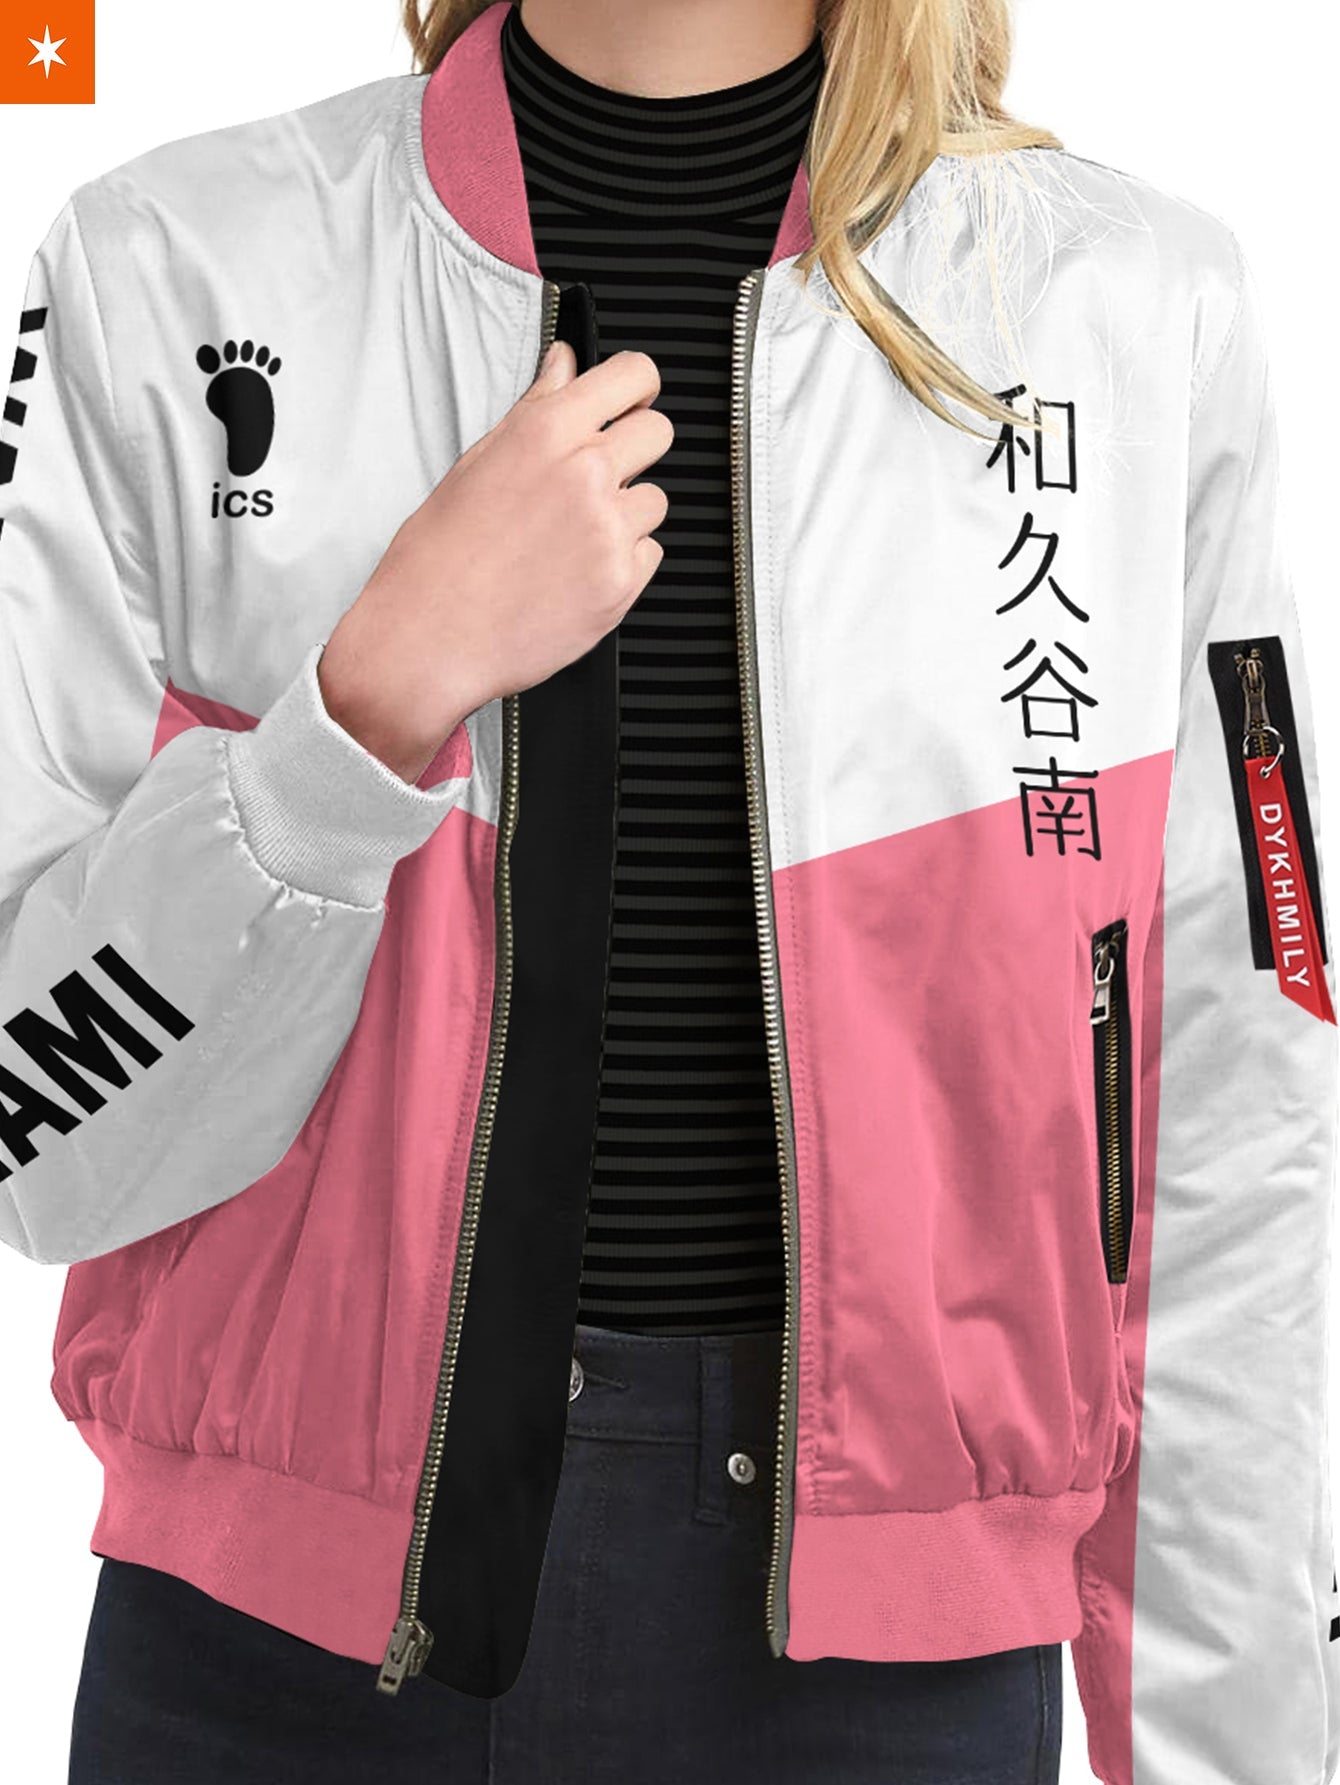 Fandomaniax - Personalized Wakutani Libero Bomber Jacket